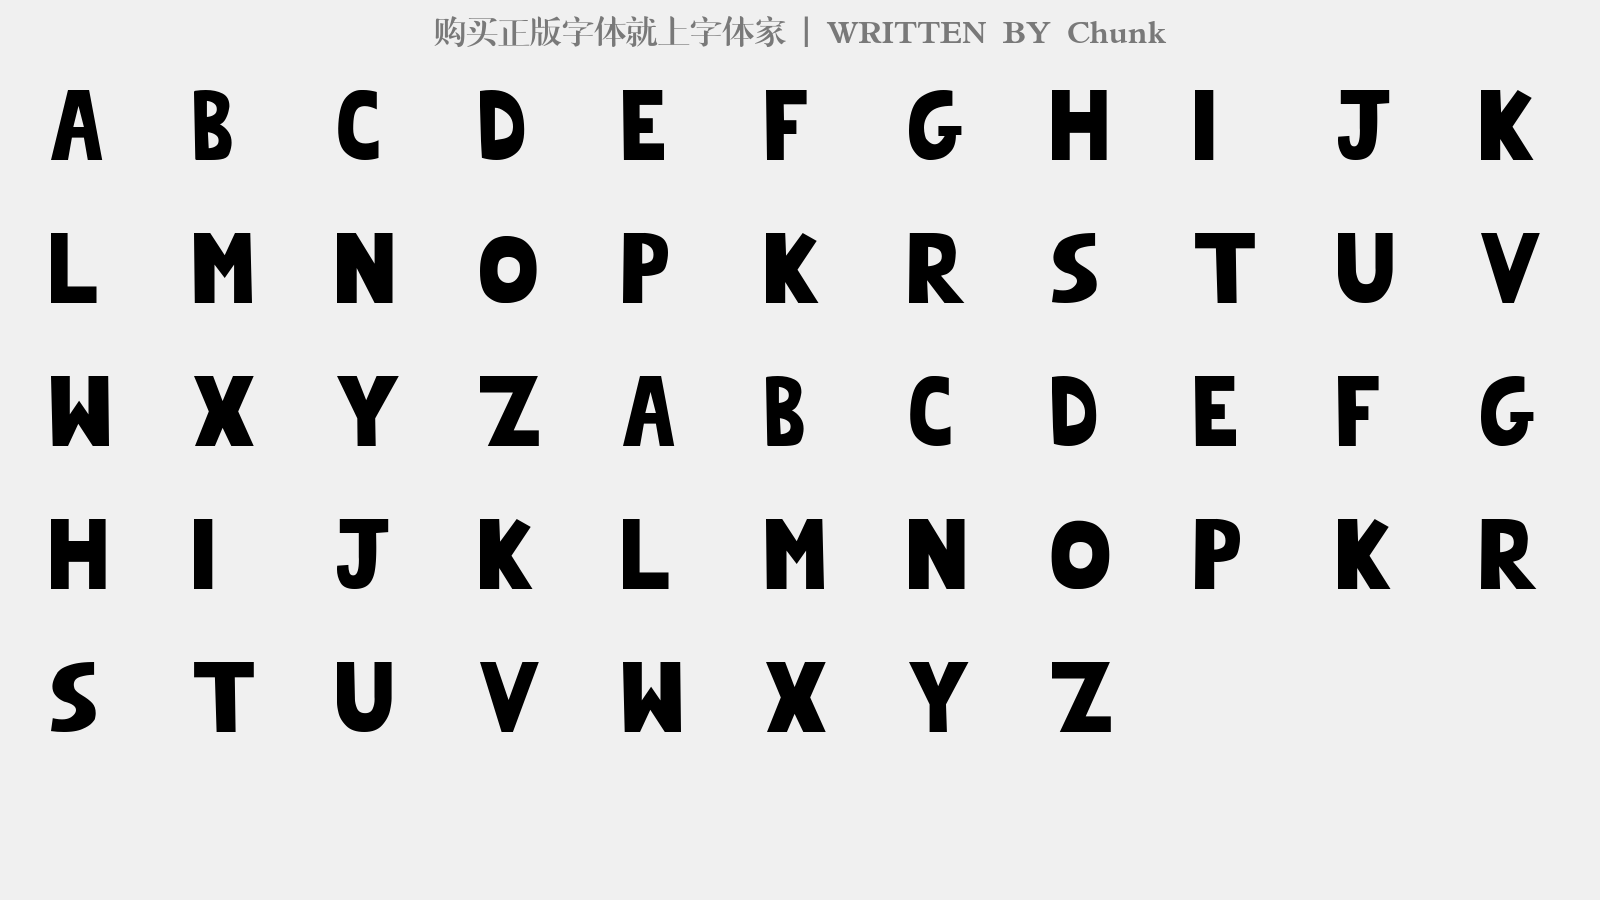 Chunk - 大写字母/小写字母/数字